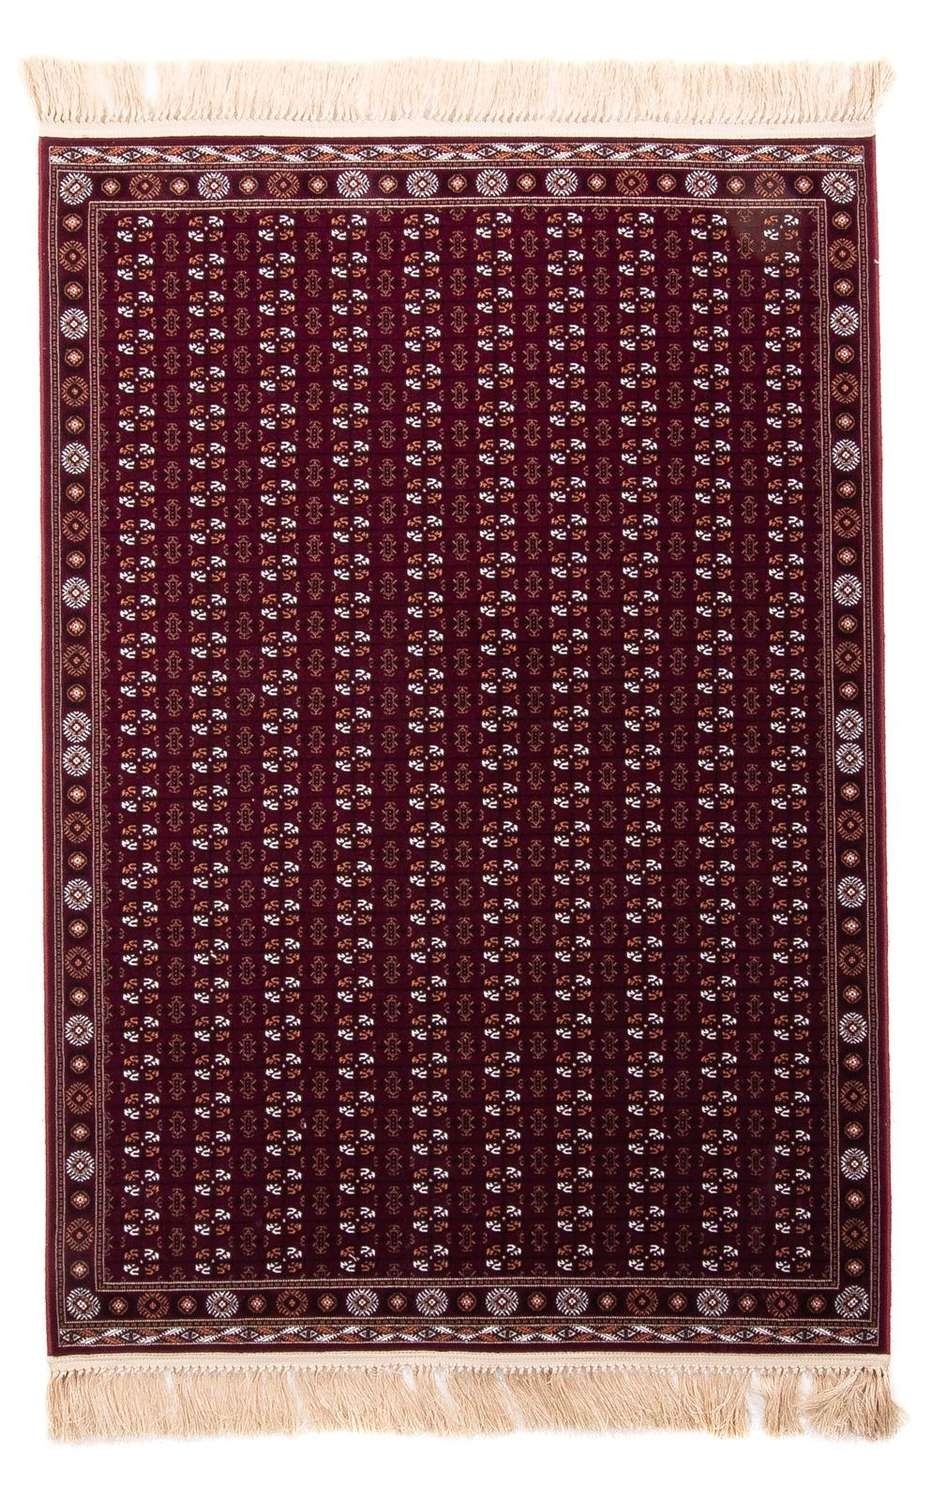 Morgenland Orientteppich - Afghan Mauri - dunkelrot - 180 x 120 cm - rechteckig